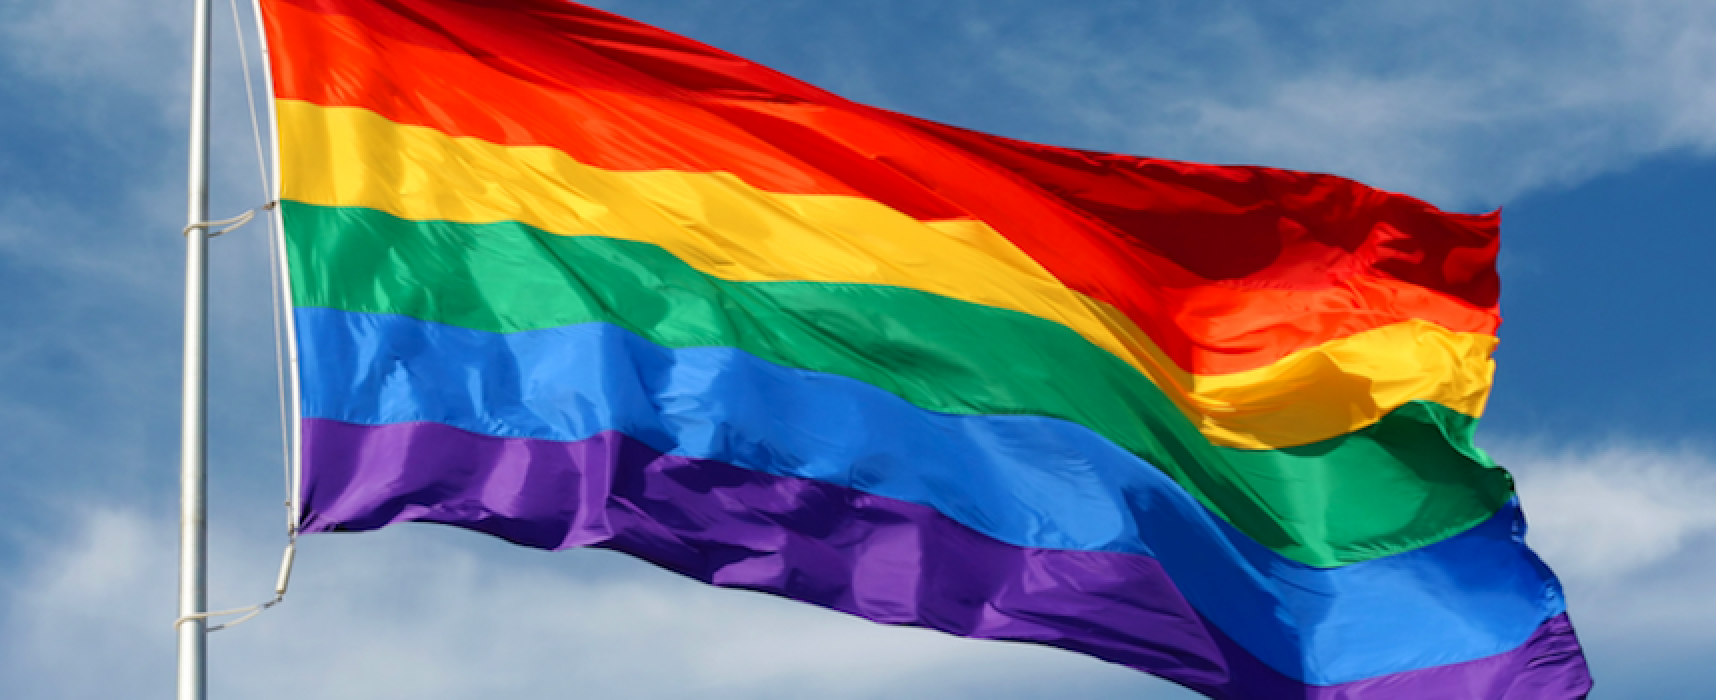 Giornata contro omofobia e transfobia, una bandiera arcobaleno a Palazzo di Città